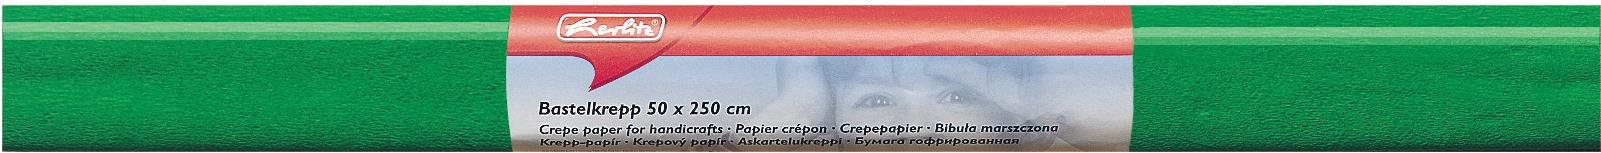 Krepp papír HERLITZ 50 x 250 cm